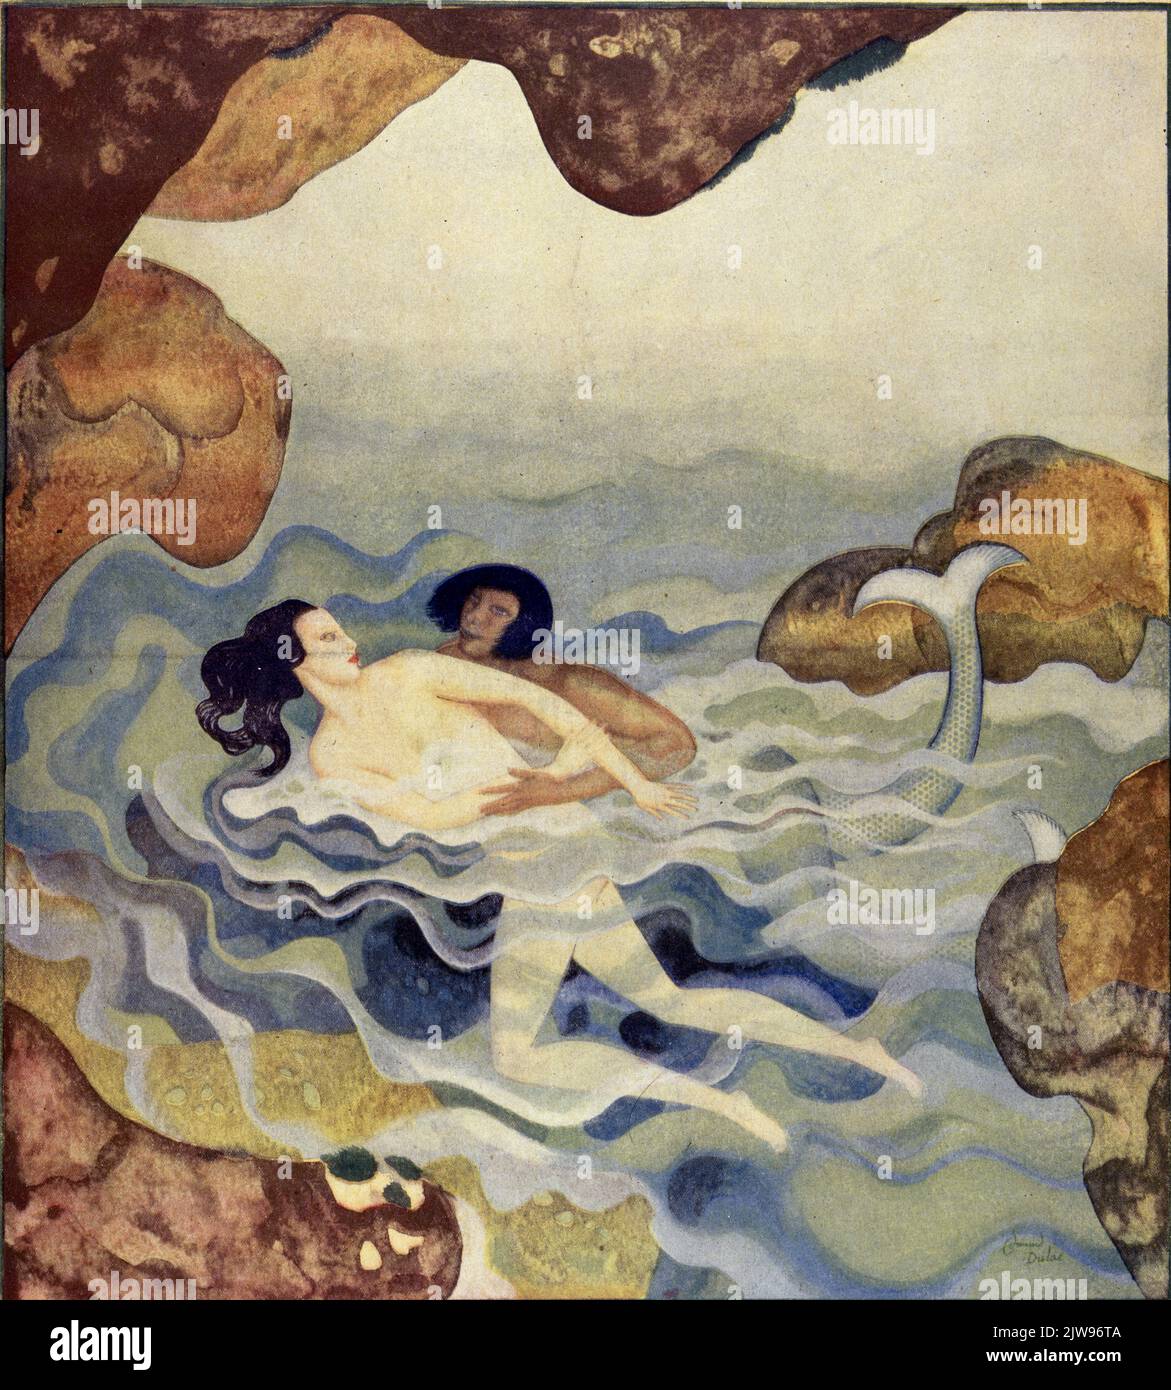 'Glaucus and Scylla' a publié 30 avril,1933 dans le magazine American Weekly Sunday peint par Edmund Dulac pour la série Myths the Ancients croyait Banque D'Images